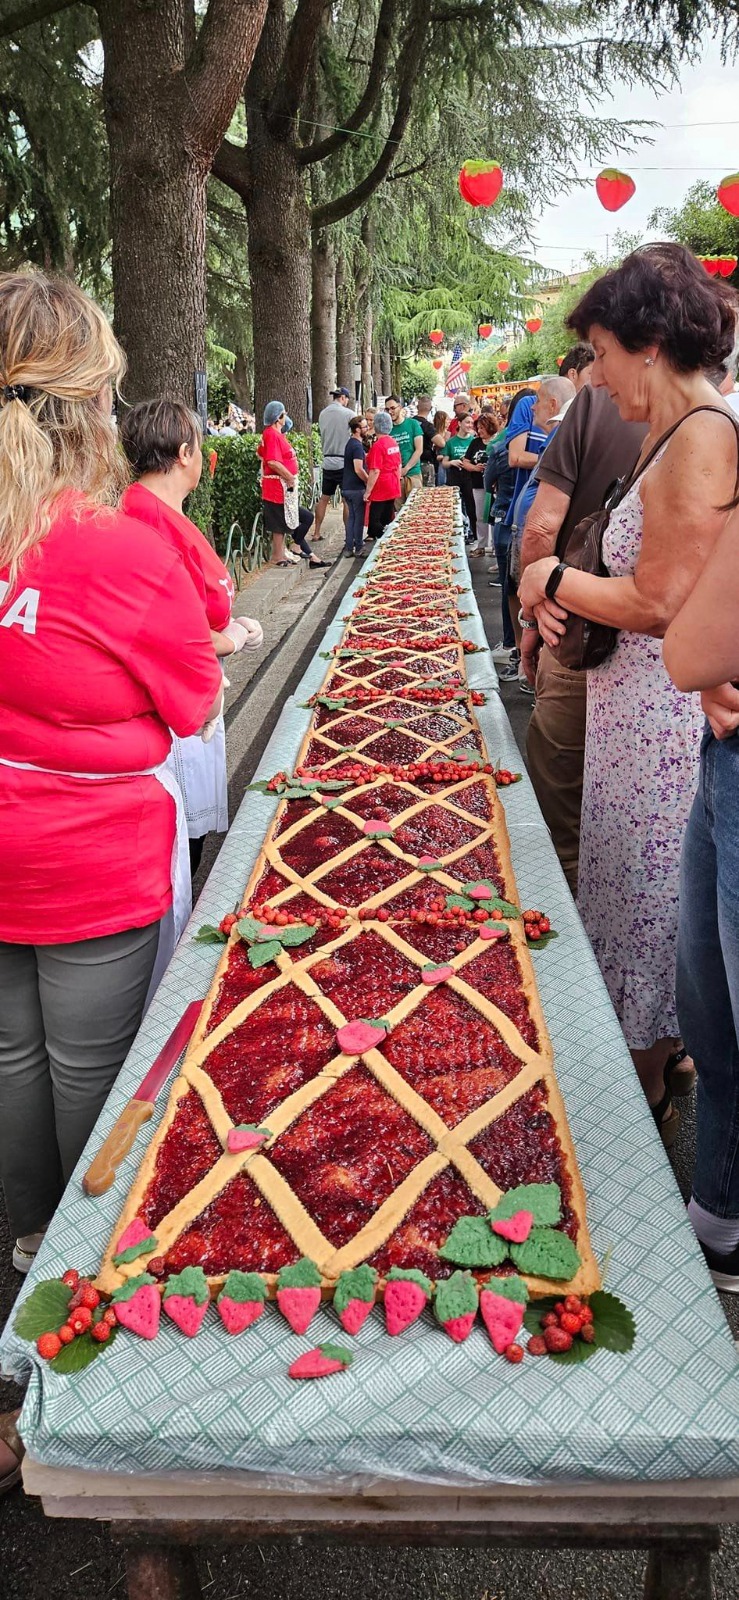 Fragolina di bosco a Petina, un successo la sagra con la crostata lunga decine di metri